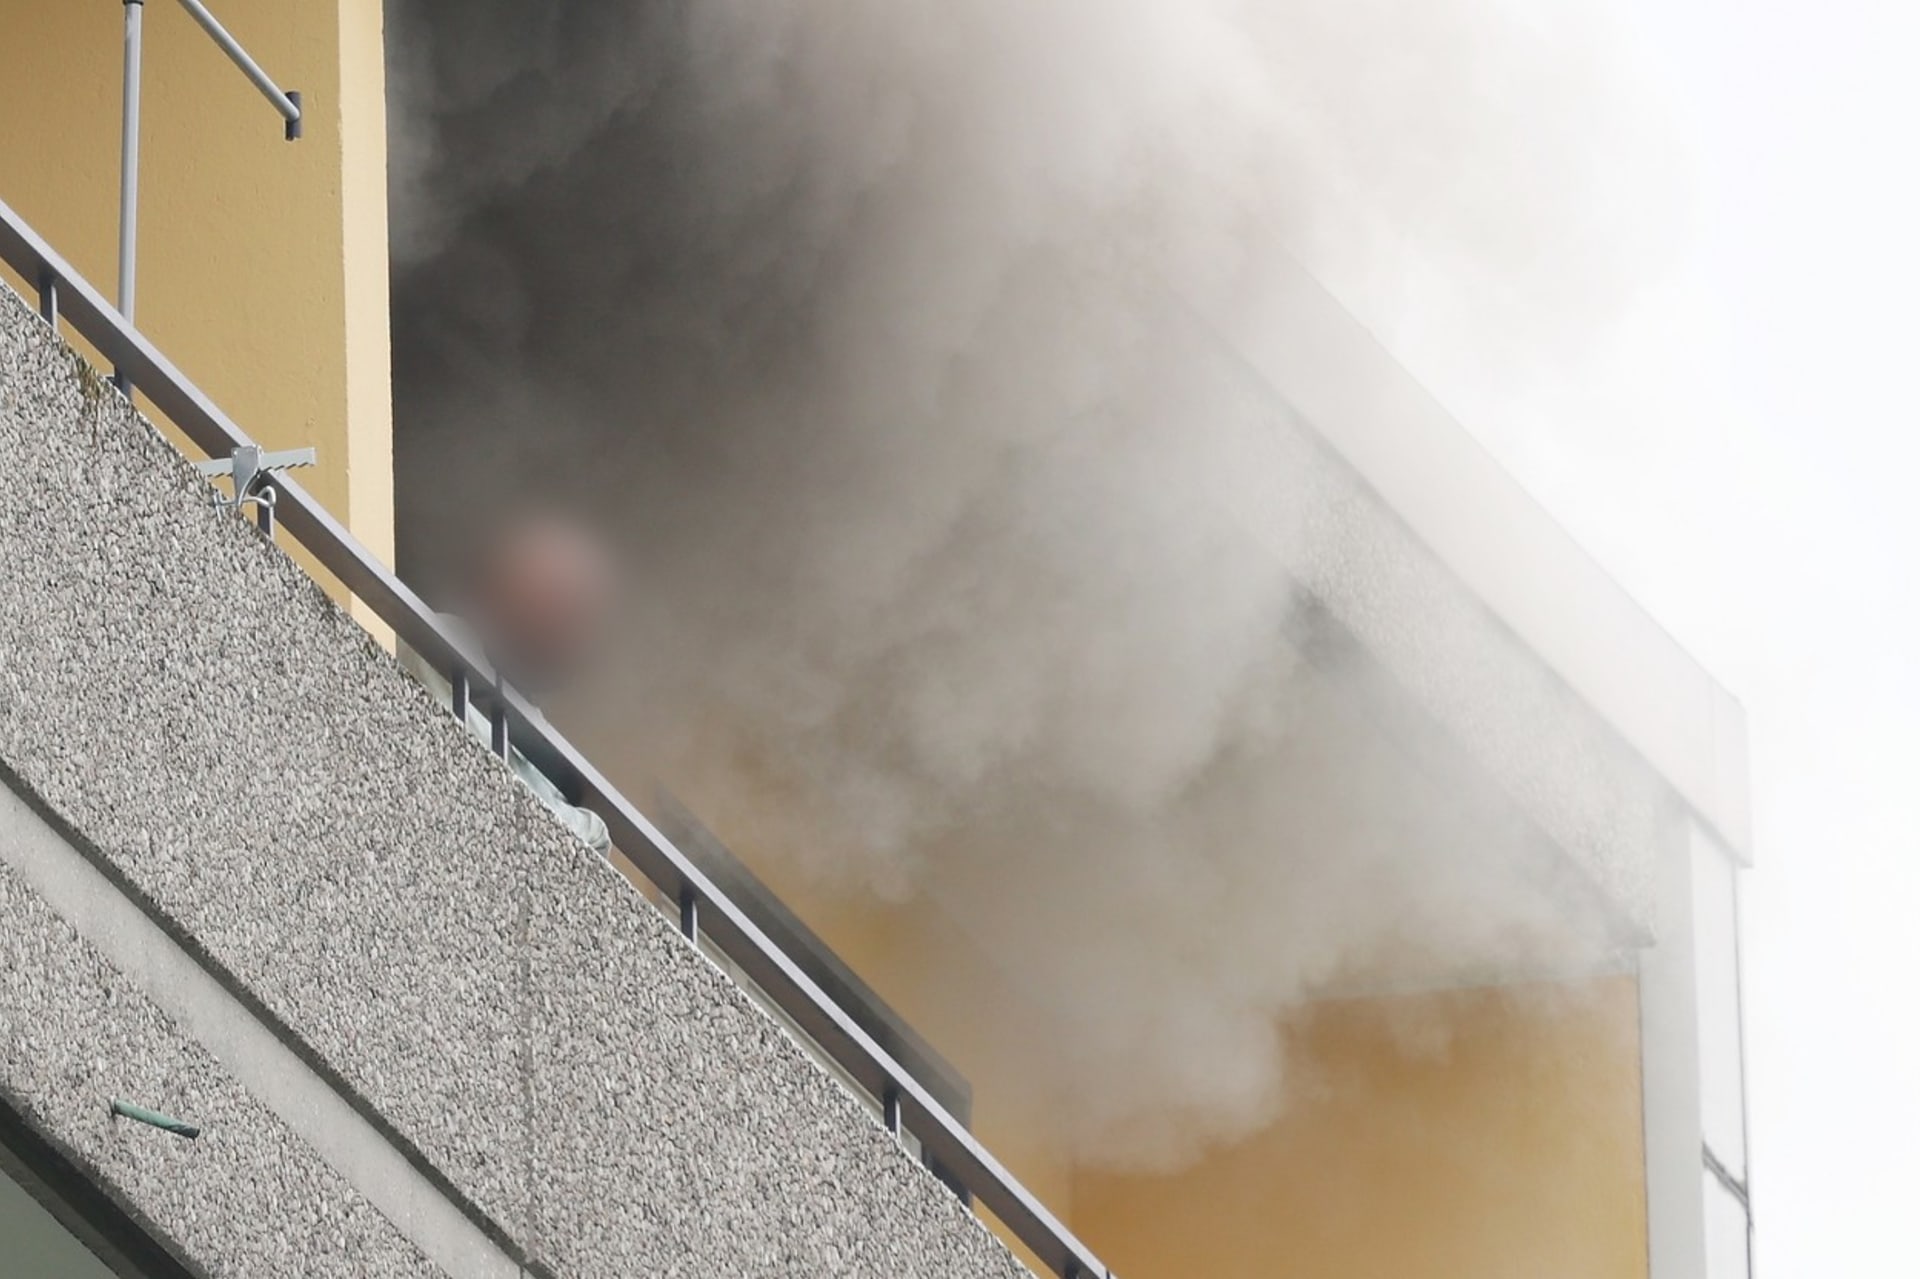 Požár a následná exploze ve věžáku v Ratingenu